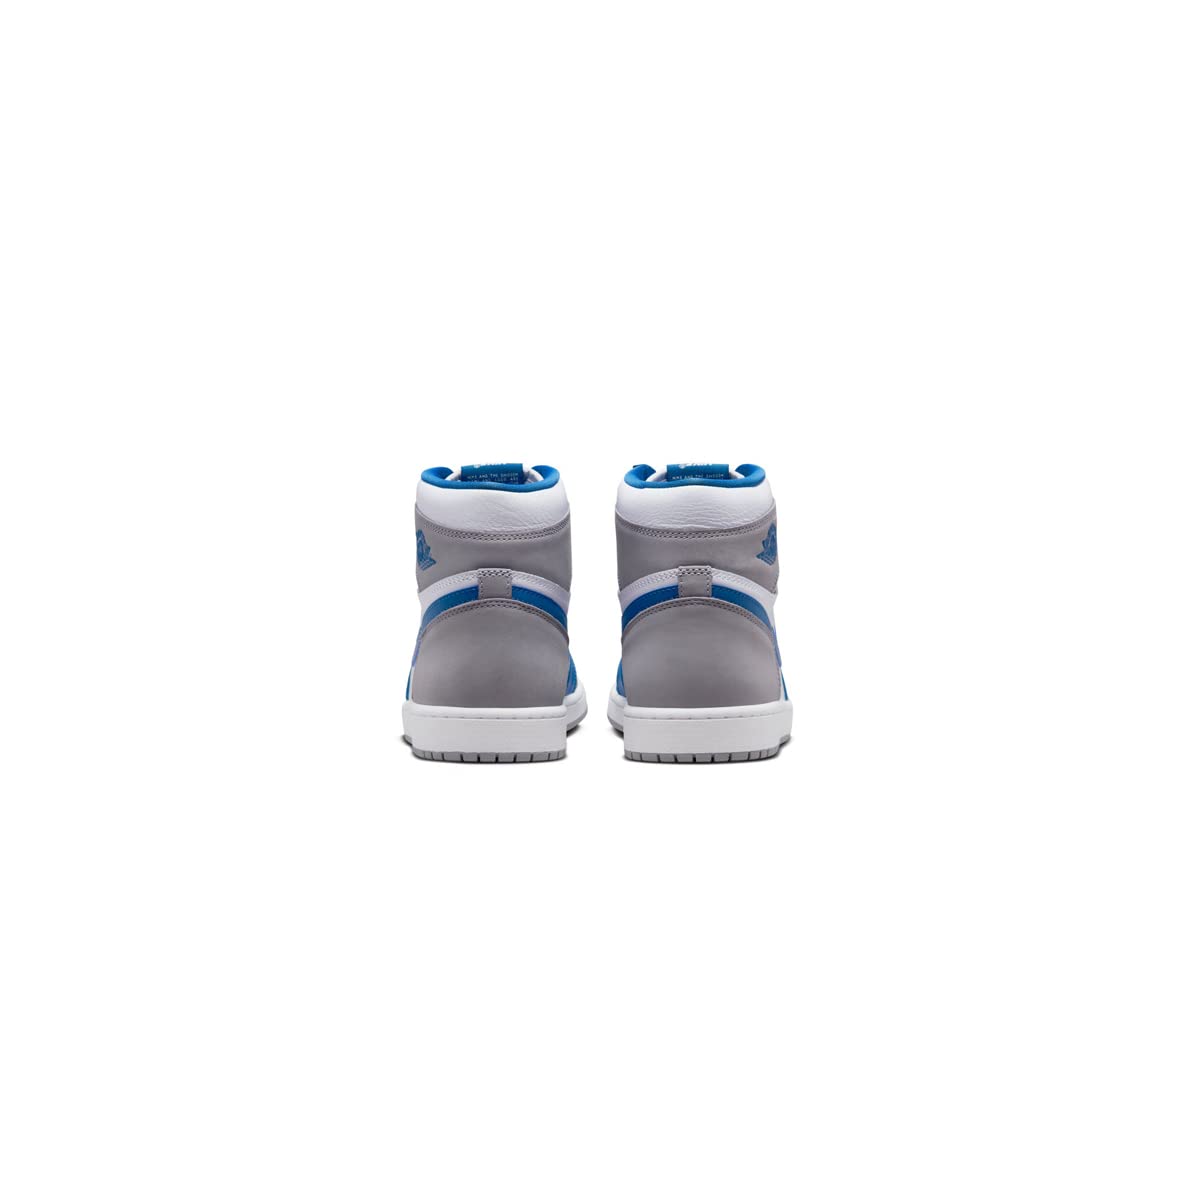 Jordan Men's 1 Retro High OG True Blue/White-Cement Grey (DZ5485 410) - 9.5